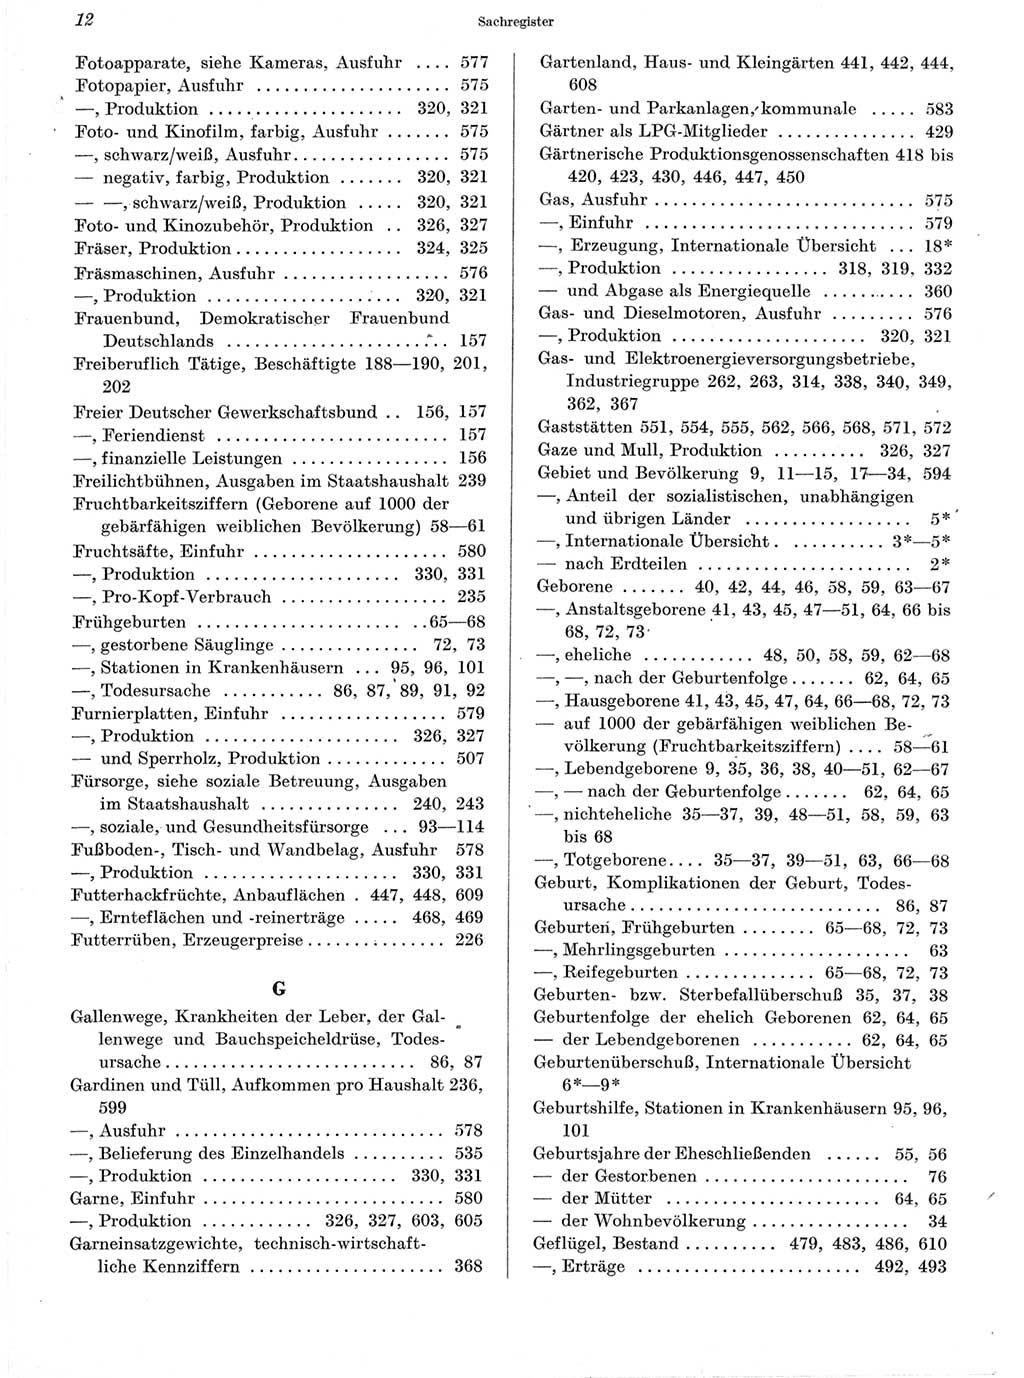 Statistisches Jahrbuch der Deutschen Demokratischen Republik (DDR) 1960-1961, Seite 12 (Stat. Jb. DDR 1960-1961, S. 12)